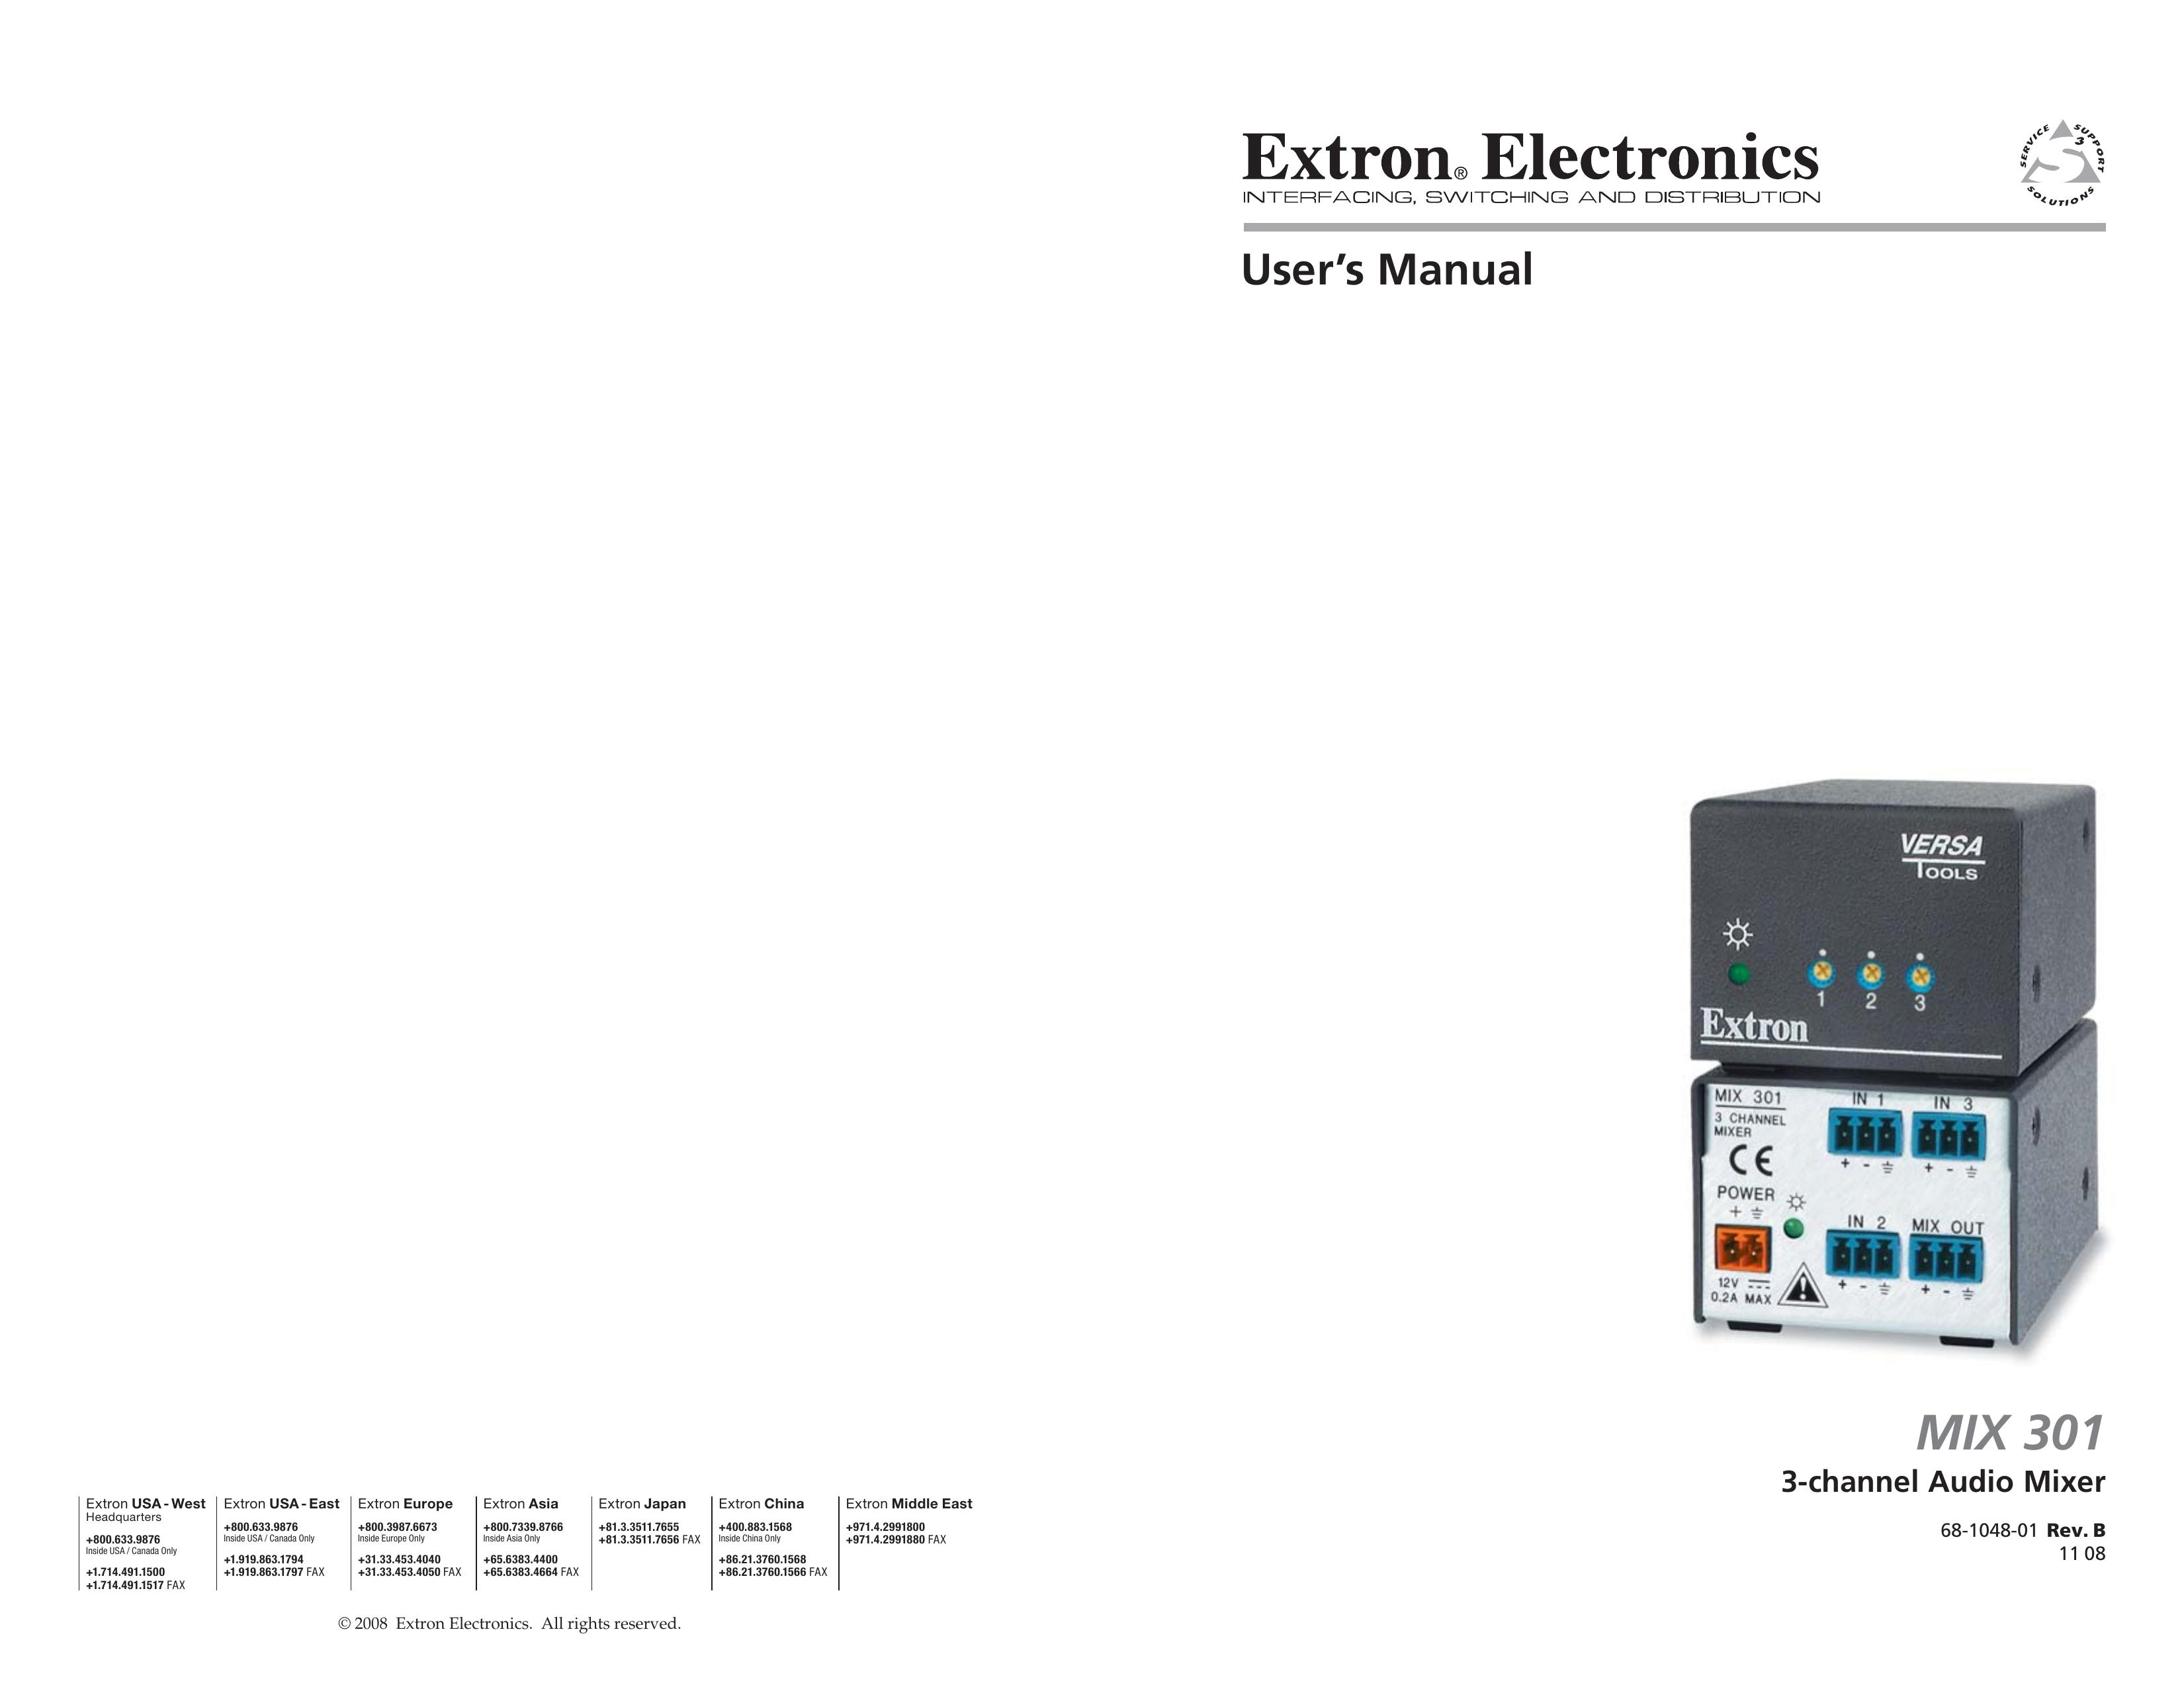 Extron electronic MIX 301 Music Mixer User Manual